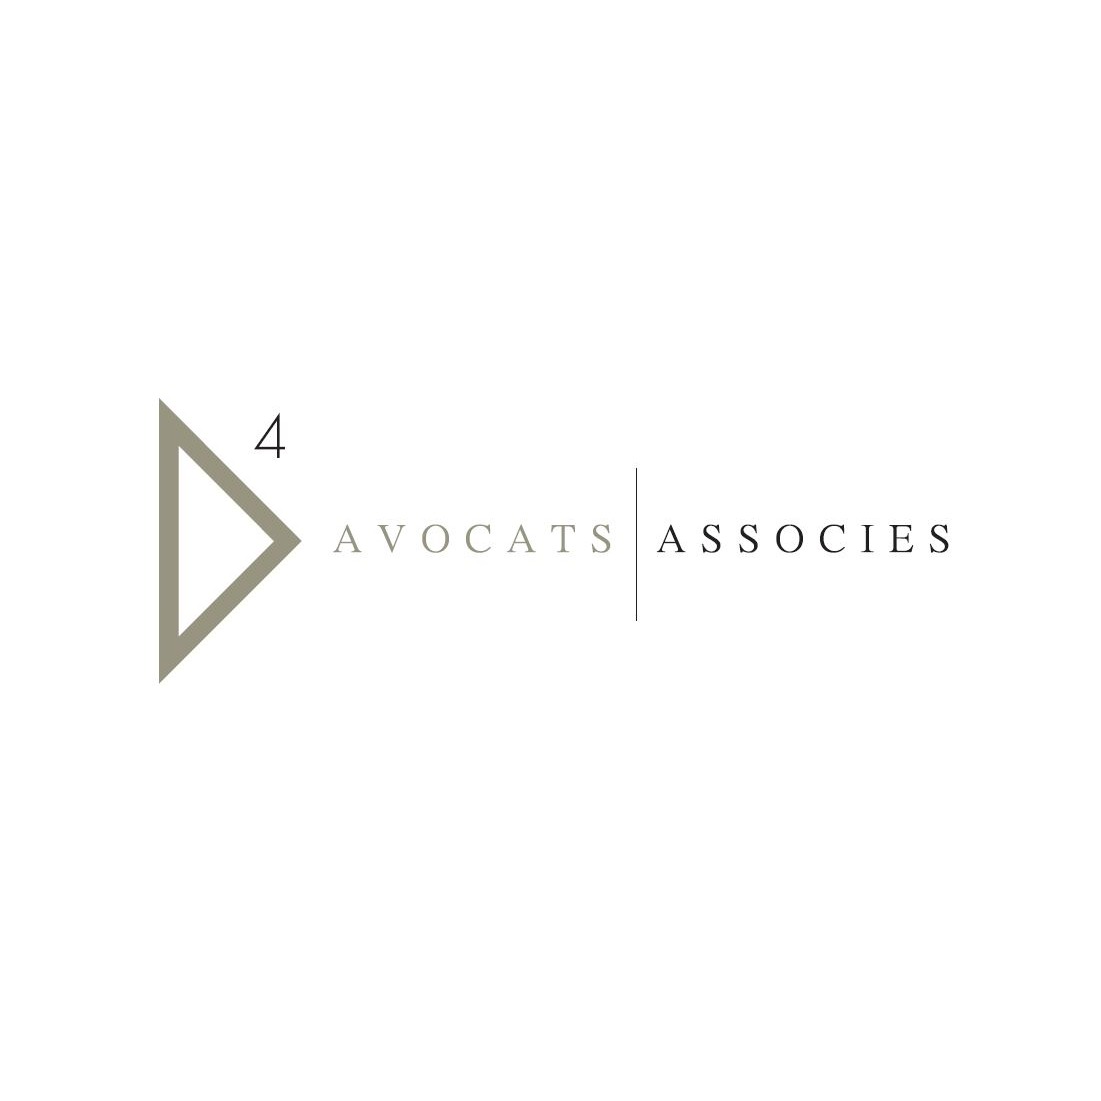 D4 Avocats Associes